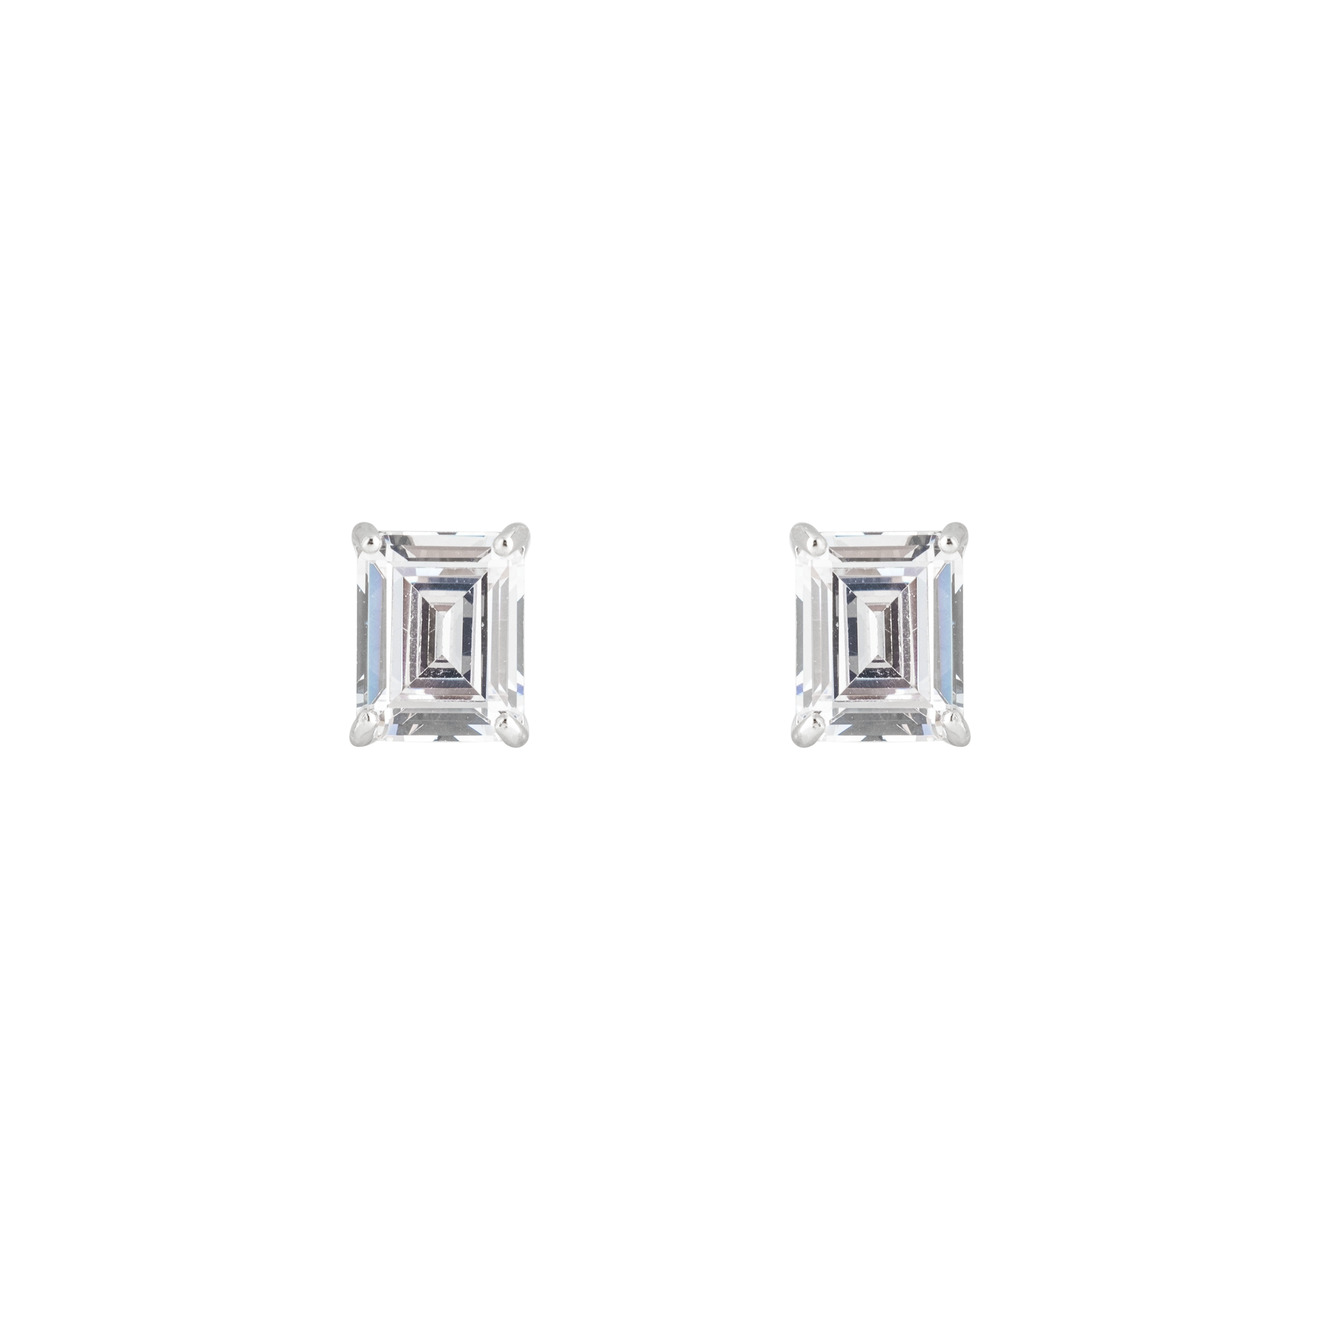 Herald Percy Серебристые серьги-пусеты с белым кристаллом herald percy серебристые серьги с квадратным голубым кристаллом и паве